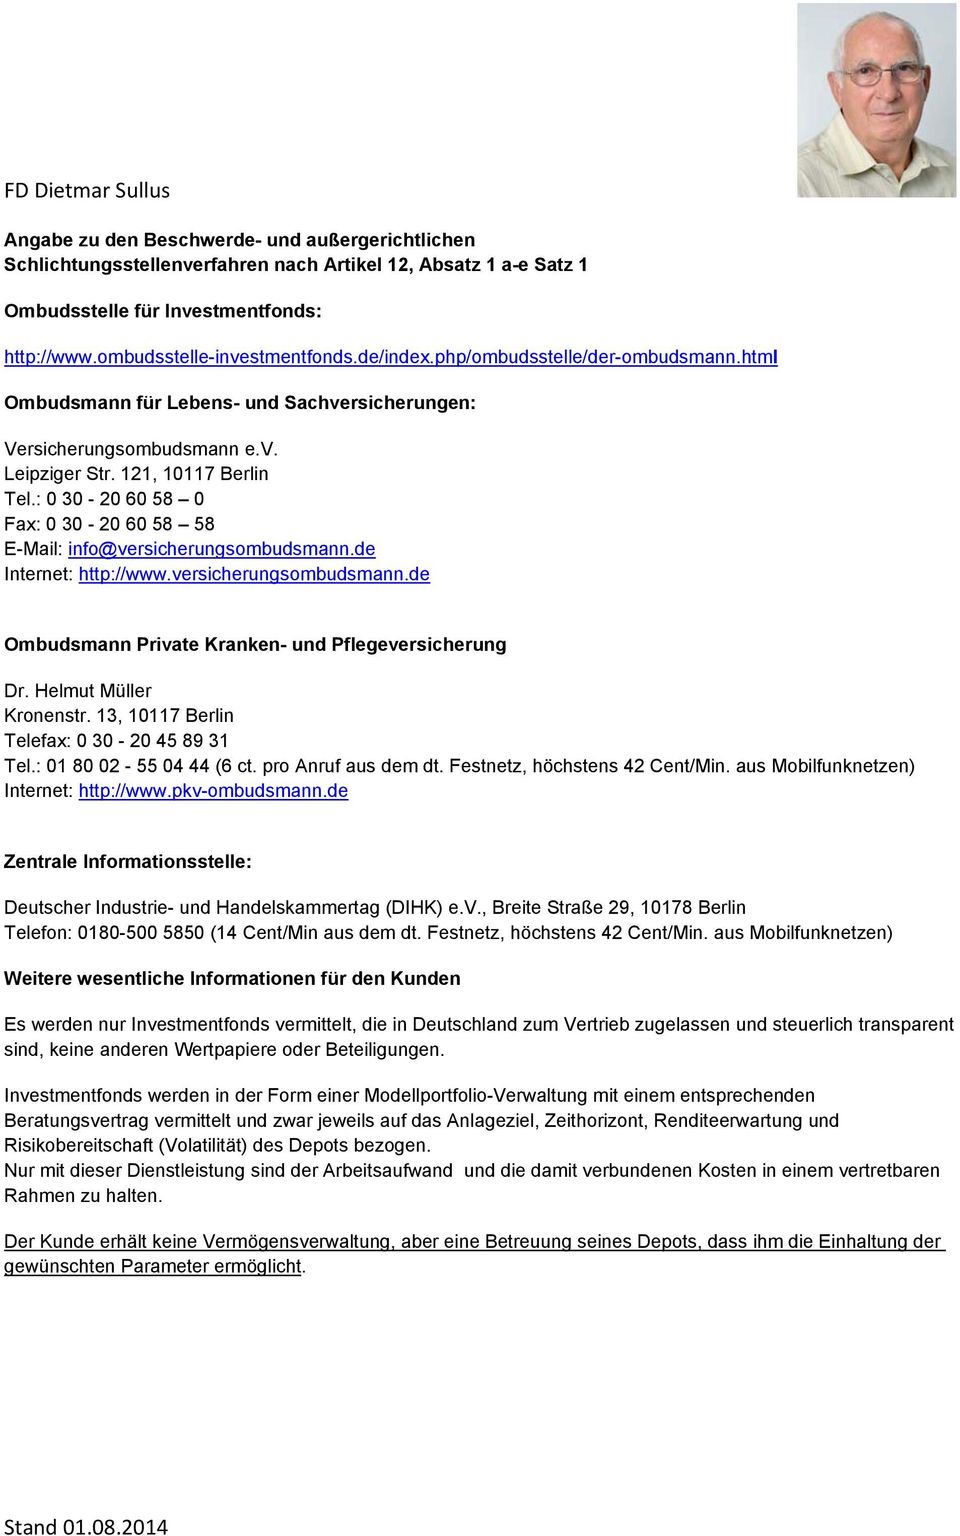 : 0 30-20 60 58 0 Fax: 0 30-20 60 58 58 E-Mail: info@versicherungsombudsmann.de Internet: http://www.versicherungsombudsmann.de Ombudsmann Private Kranken- und Pflegeversicherung Dr.